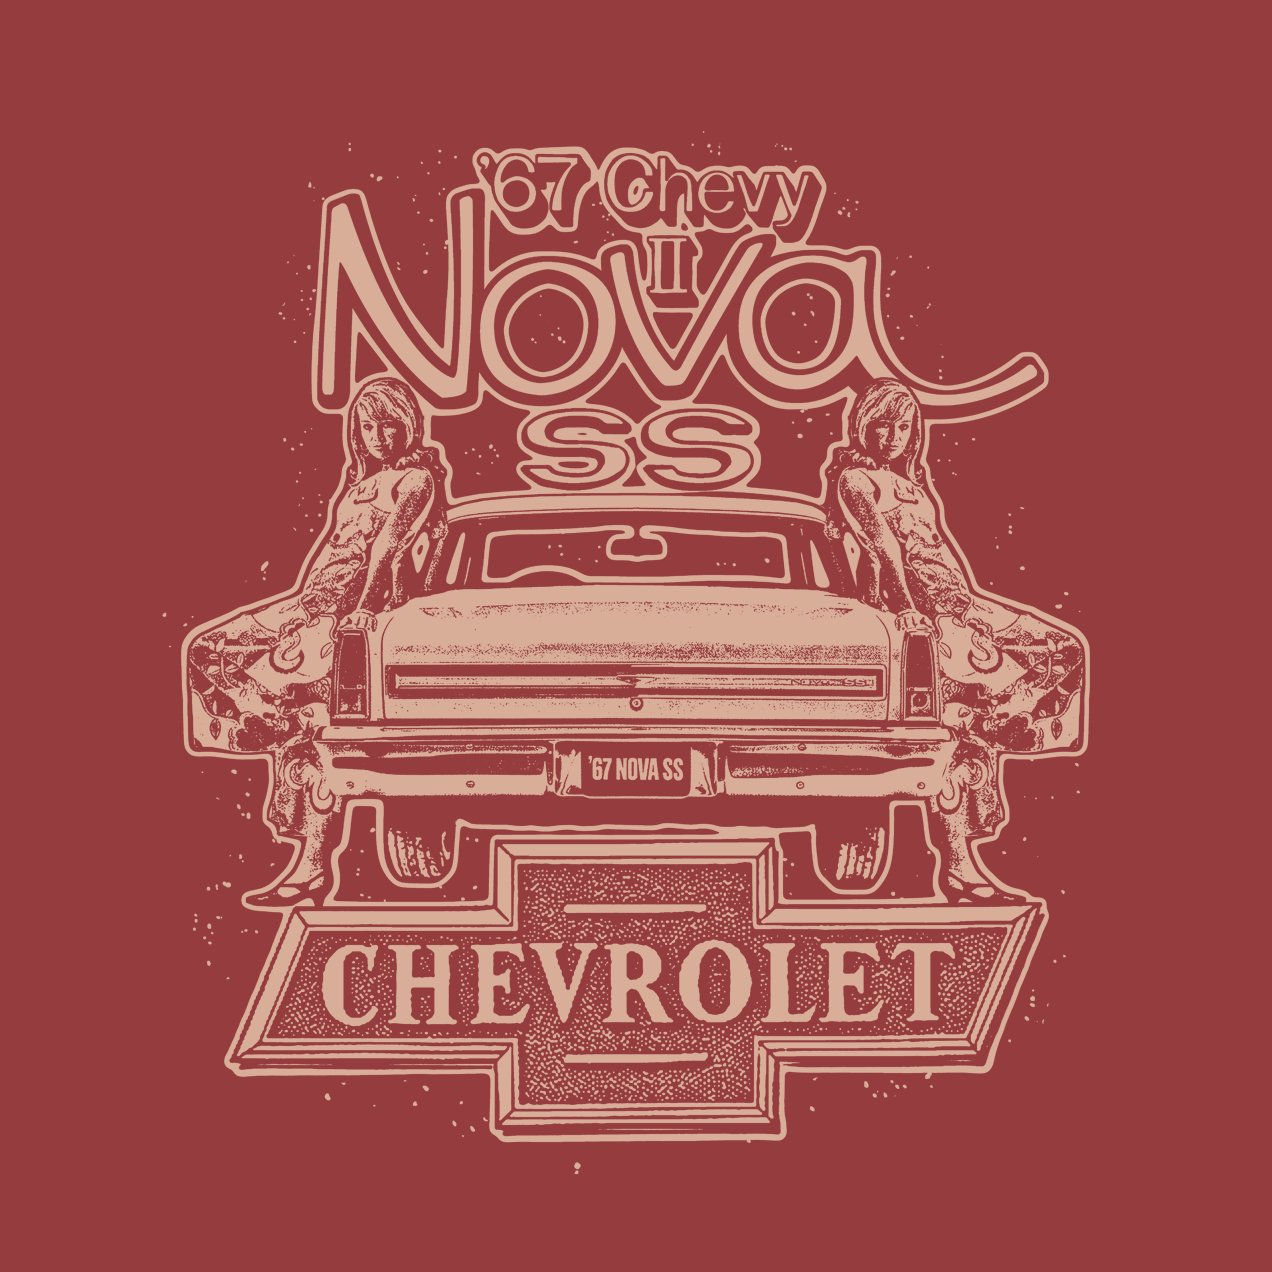 1967 Chevy Nova SS T-Shirt